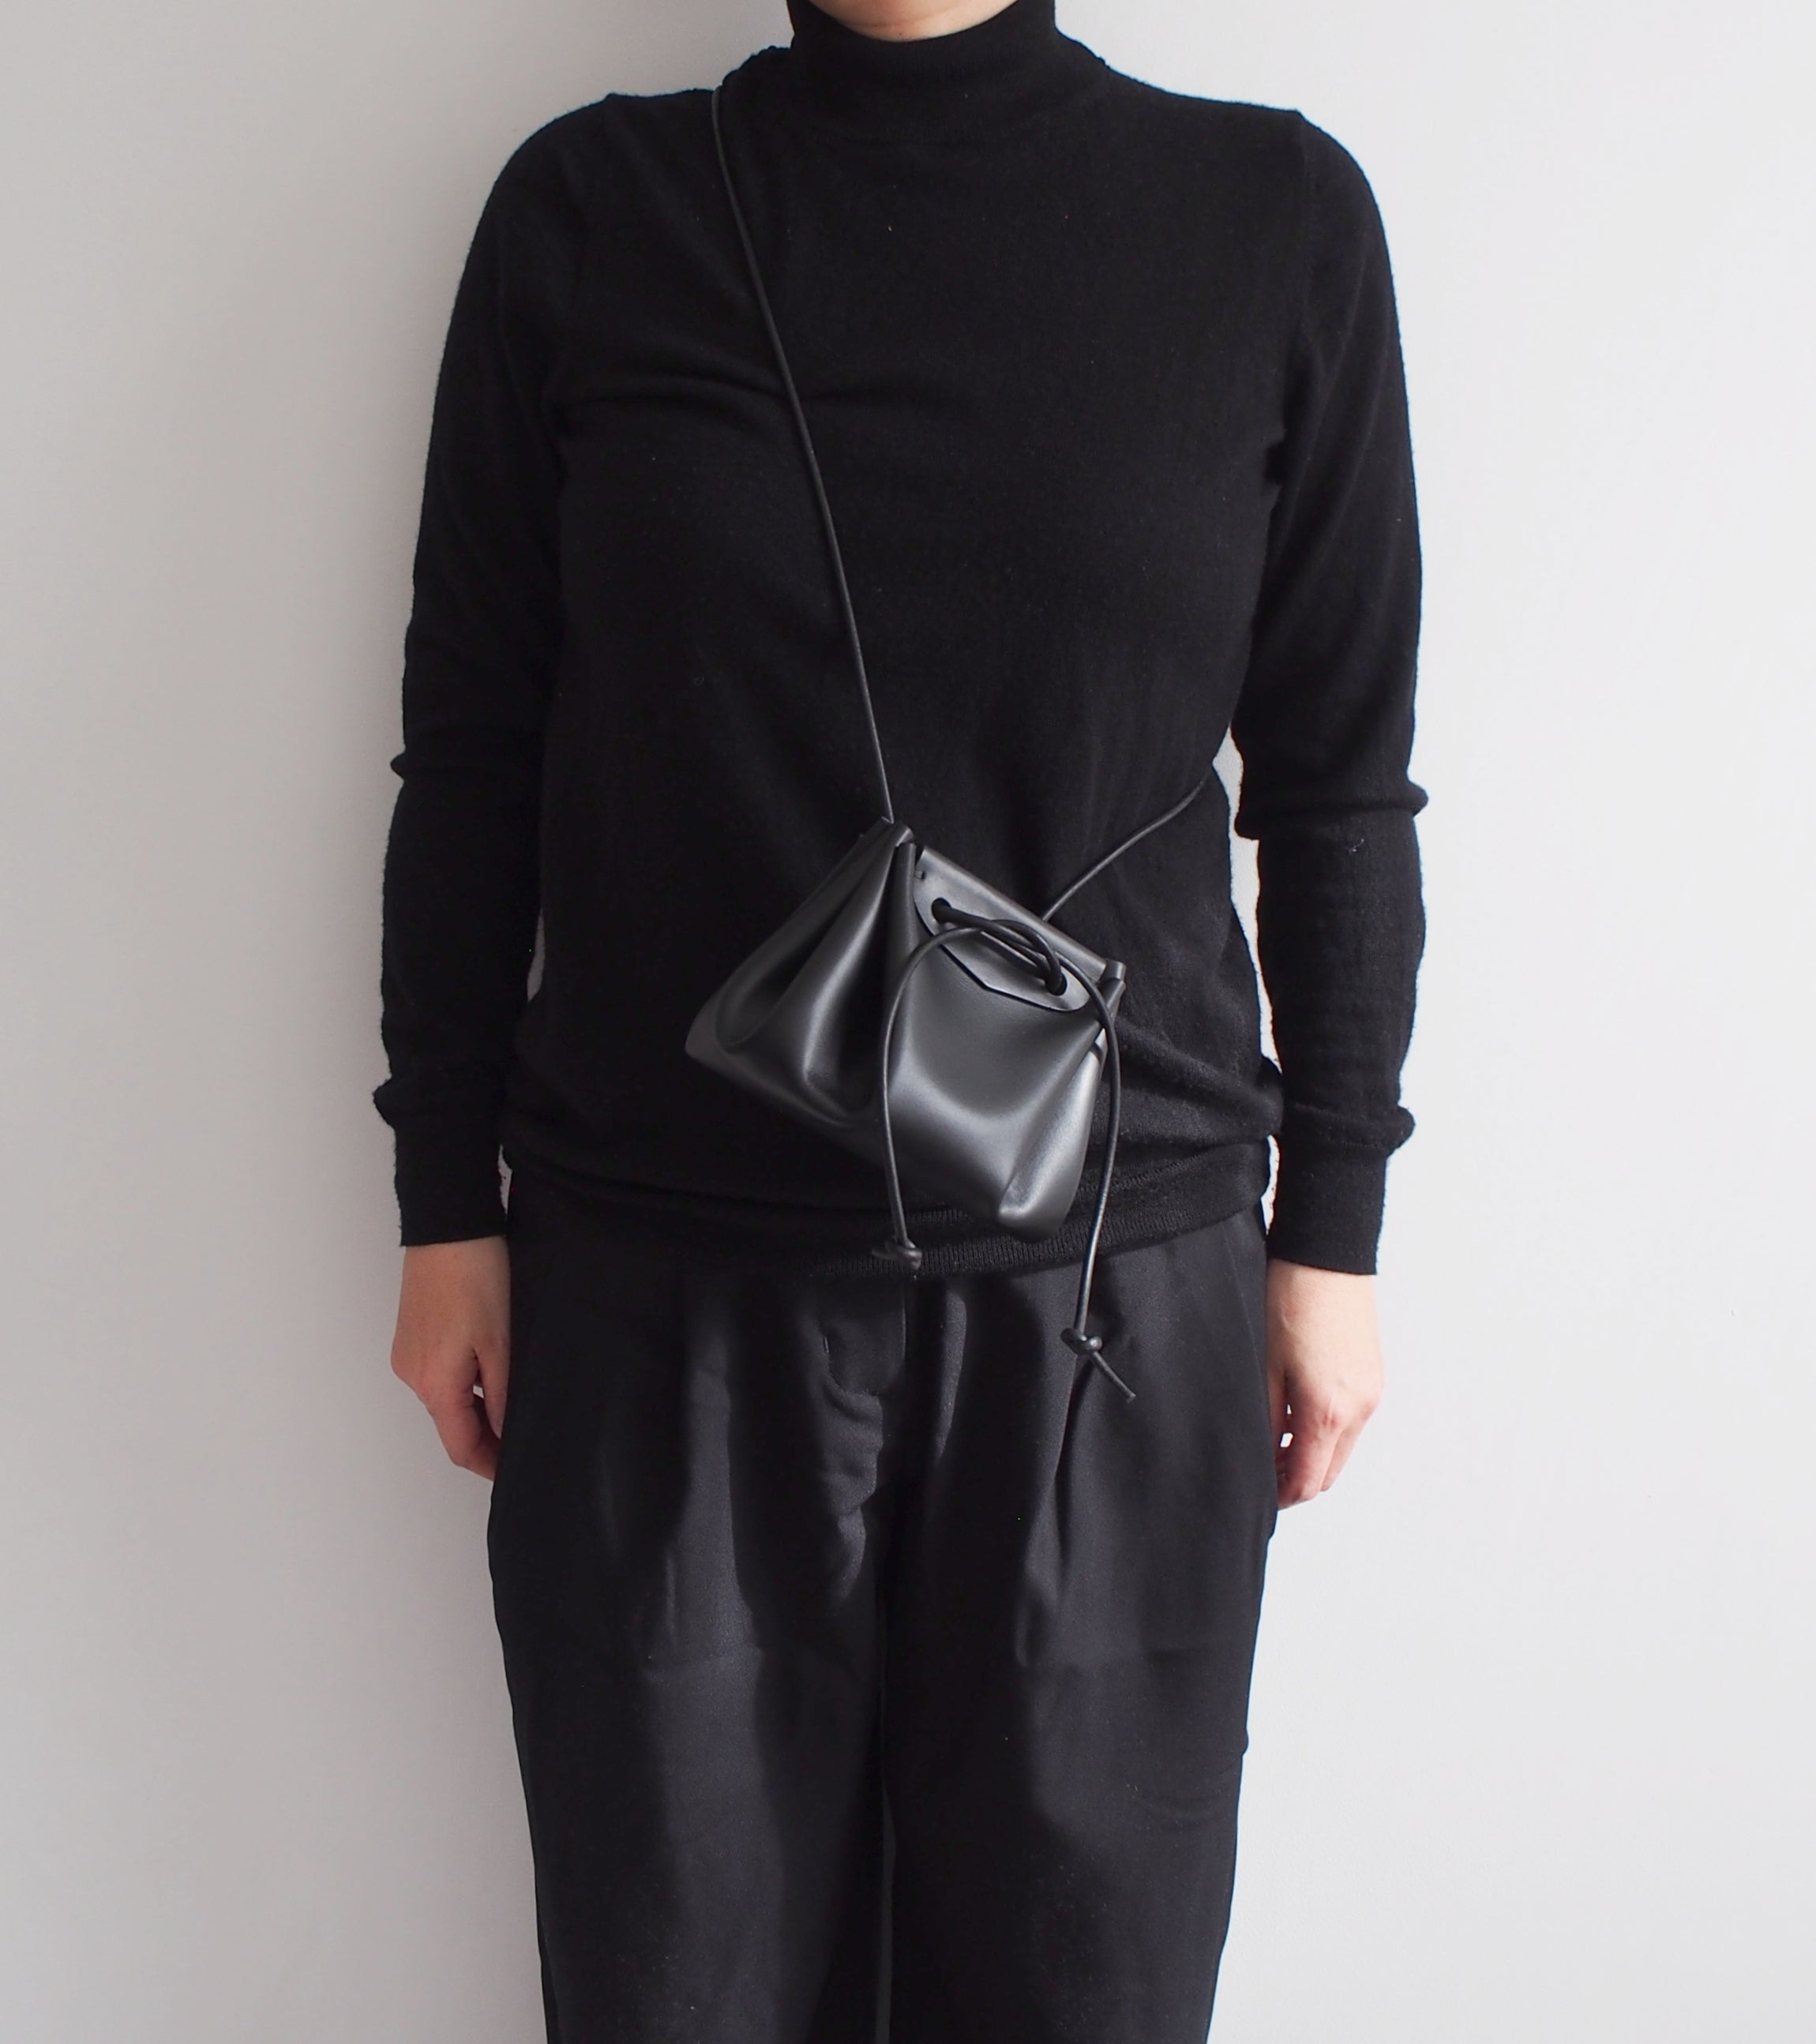 Puff Drawstring Bag - Medium / Black